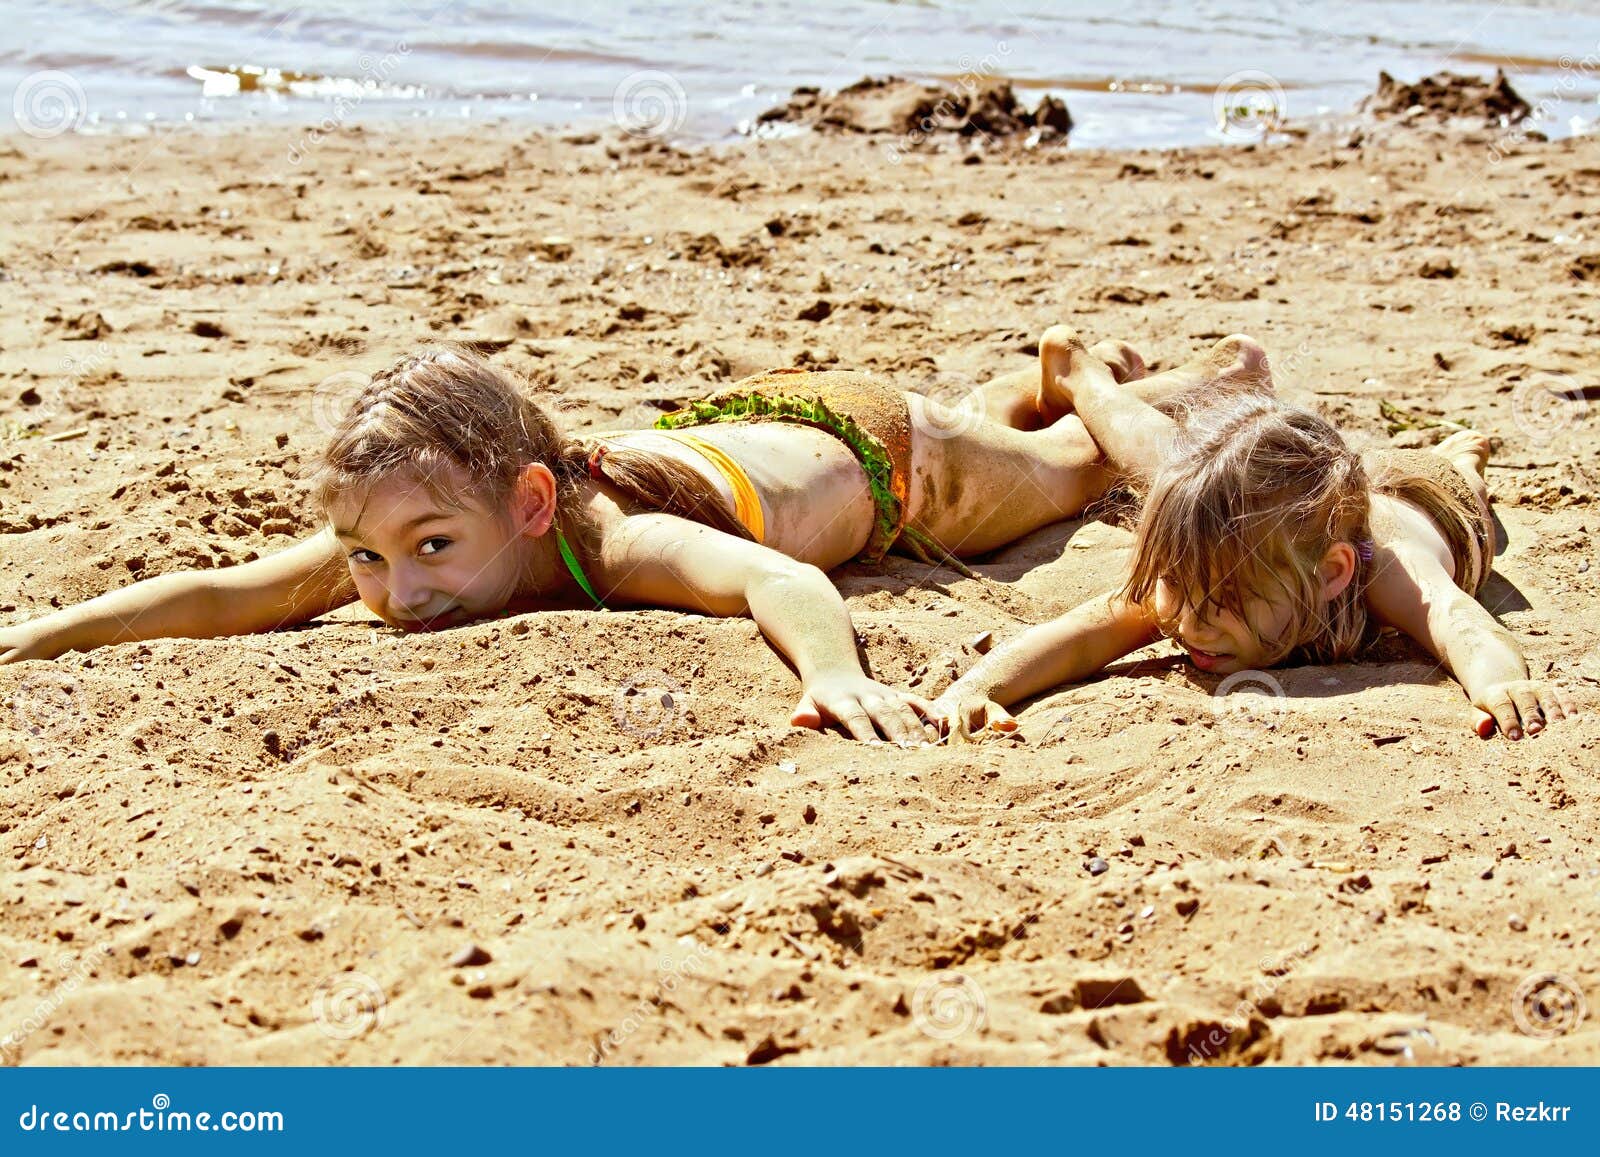 фото детей на голом пляже фото 86